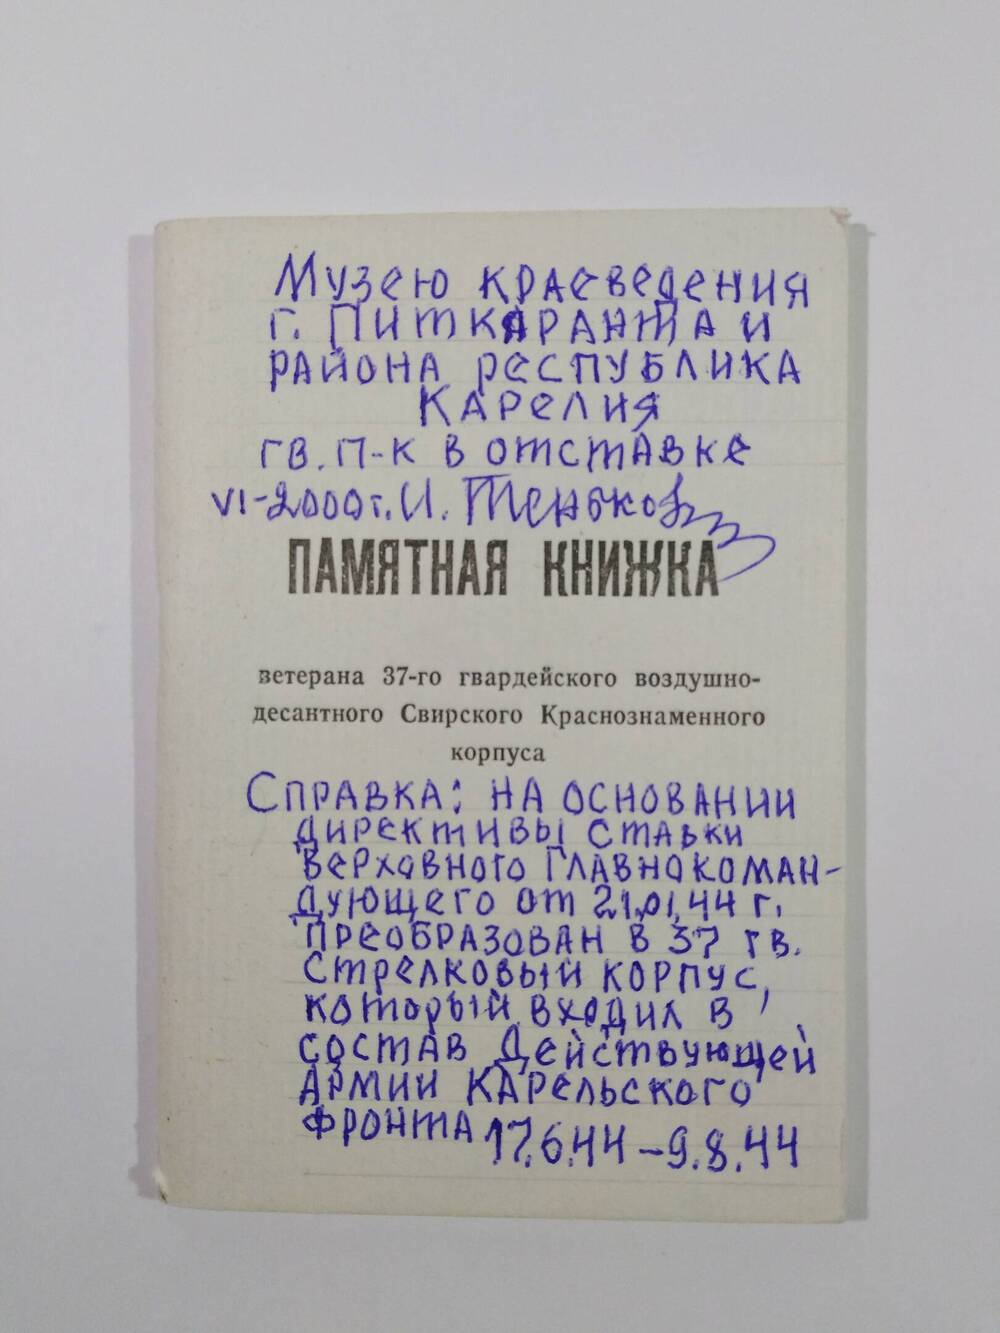 Книжка памятная ветерана 37-го гвардейского воздушно-десантного Свирского Краснознаменного корпуса.